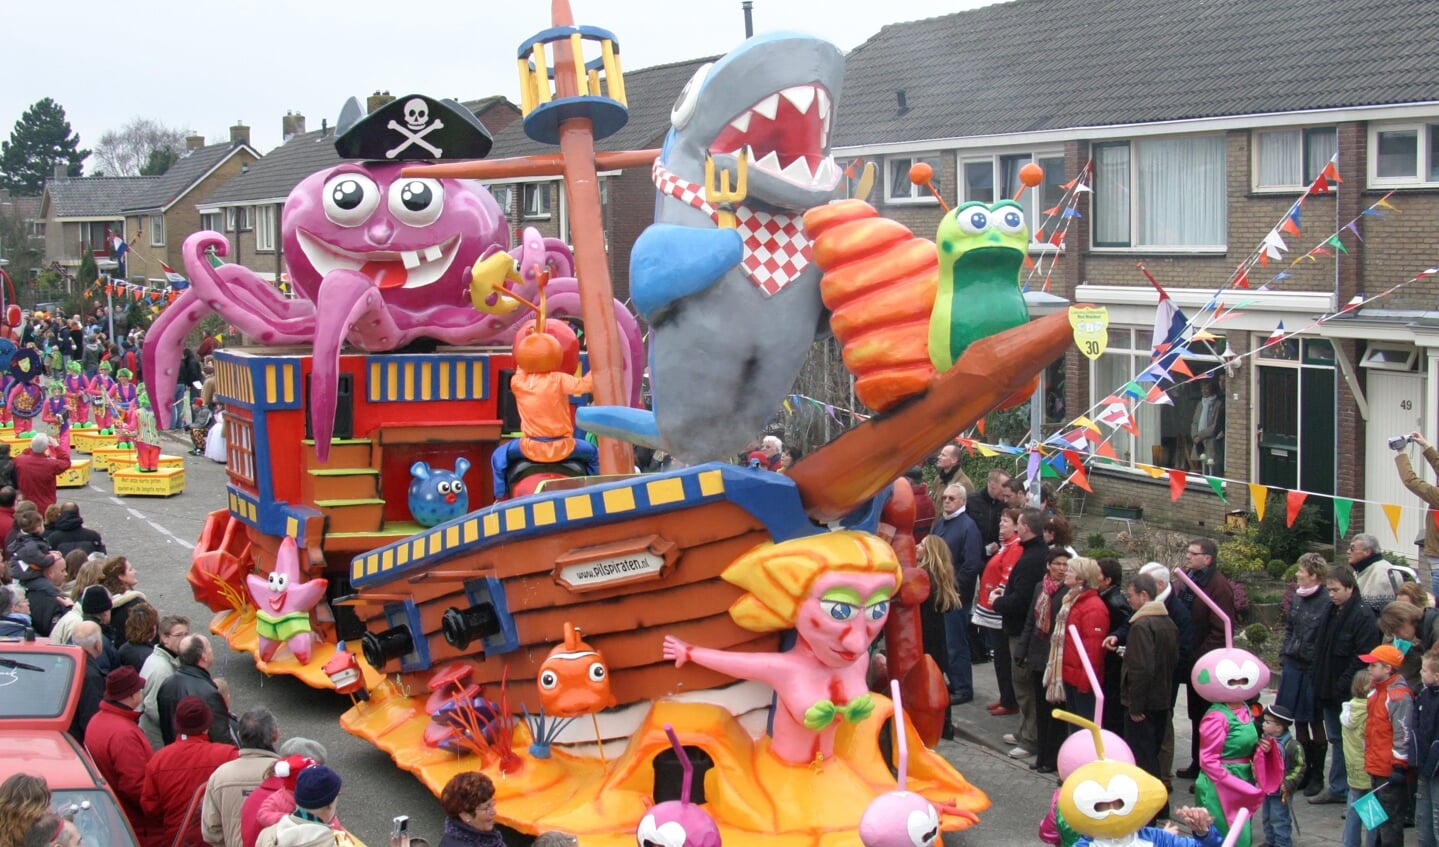 Hoogtepunt voor De Pilspiraten was hun creatie van De Snorkels in 2007: 'Met carnaval zijn wij diep gezonken'. 